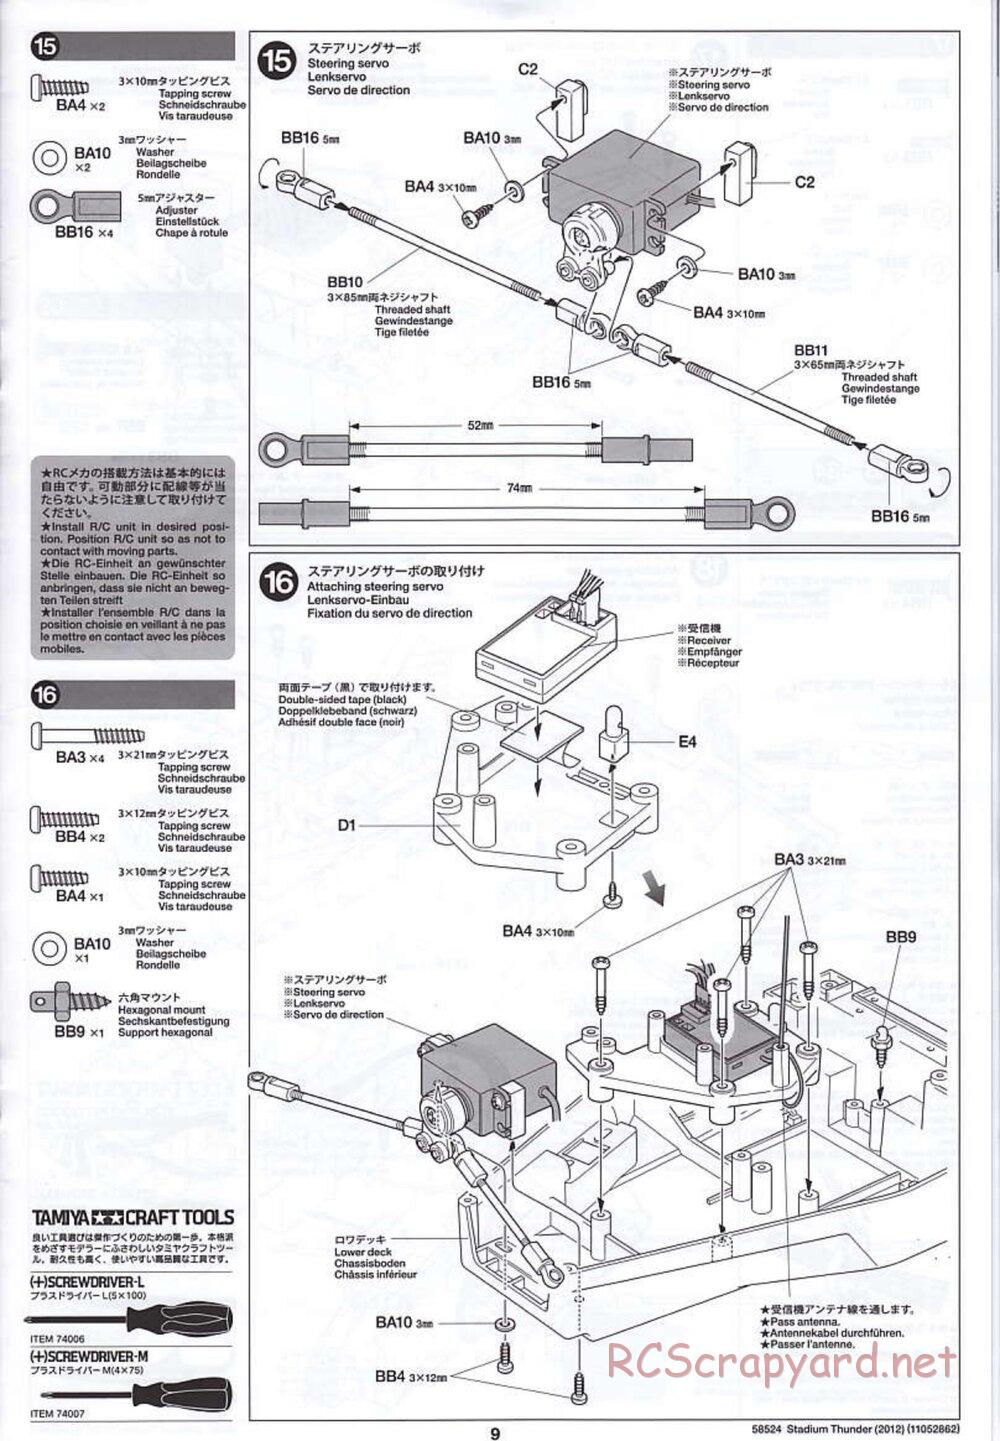 Tamiya - Stadium Thunder 2012 - FAL Chassis - Manual - Page 9